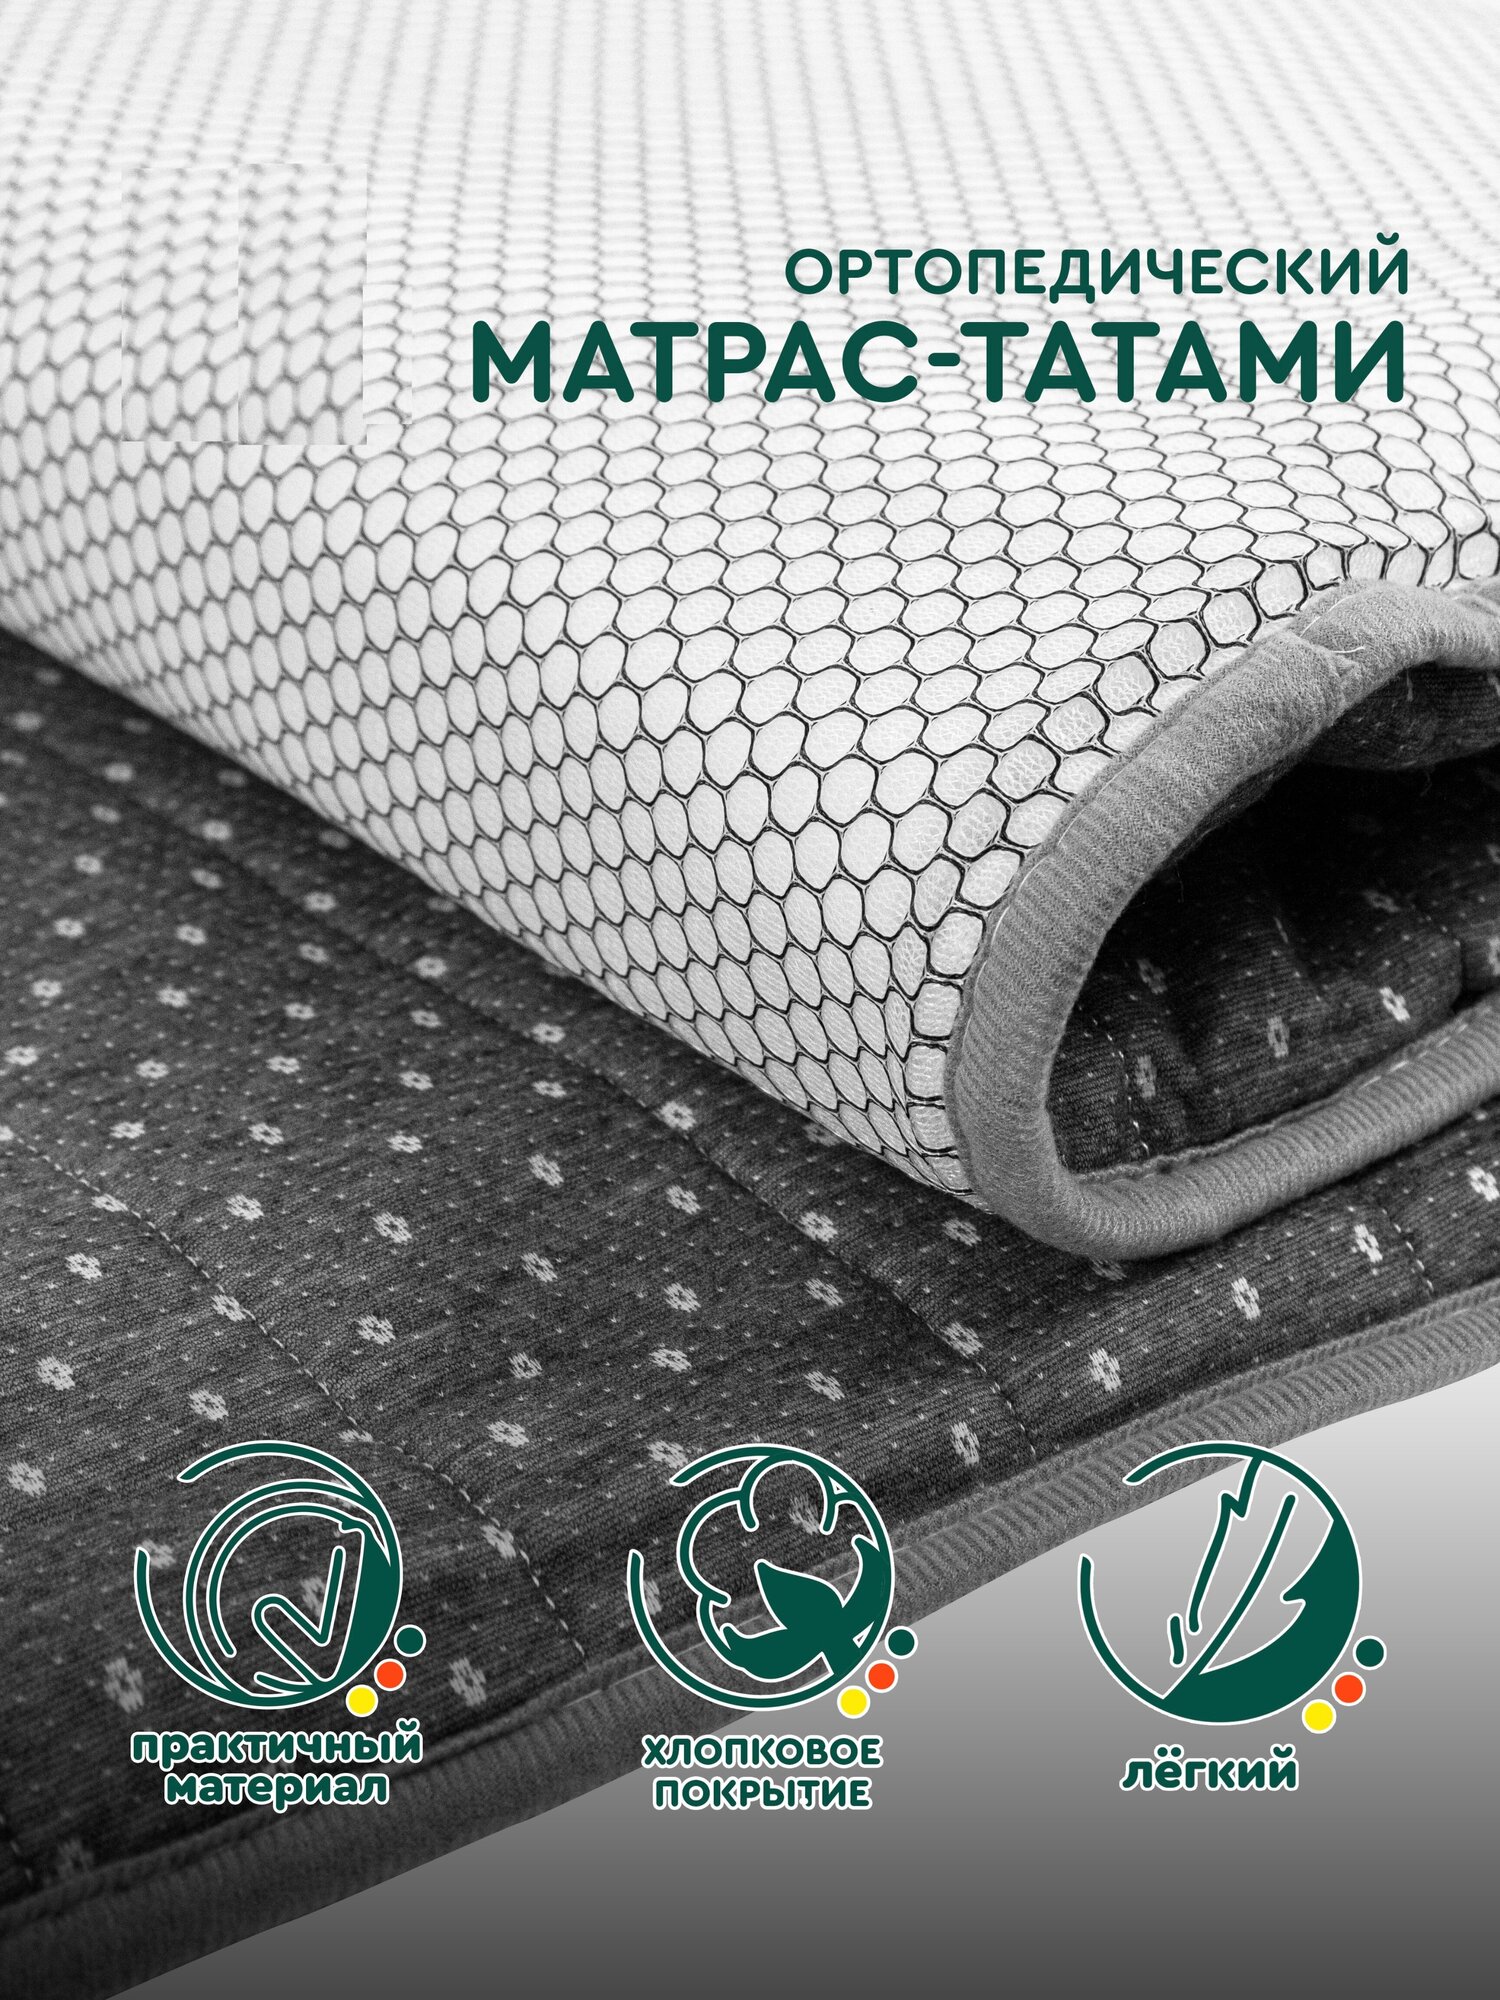 Матрас татами (серый, 90x200 см) Hans&Helma для сна односпальный